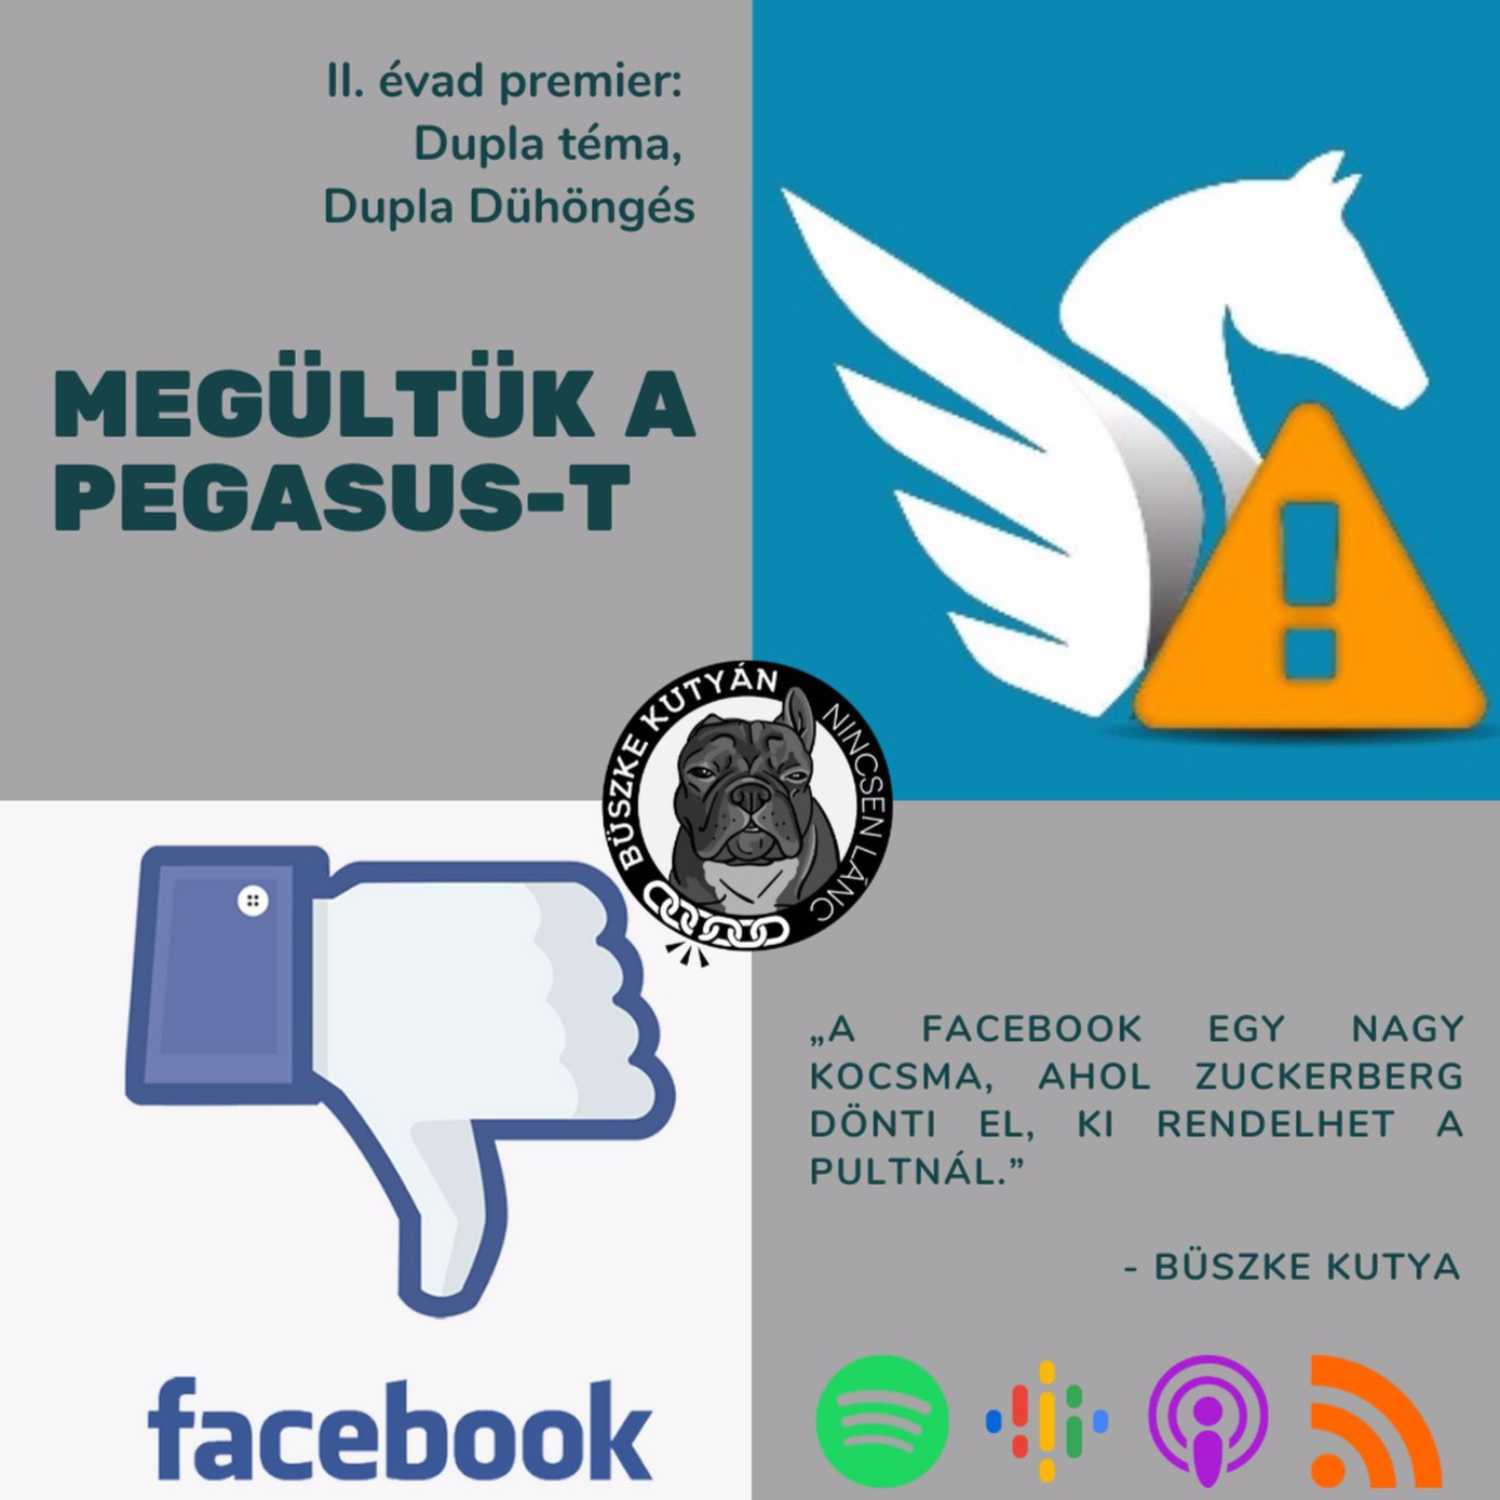 II. évad PREMIER! Dupla Dühöngés: hirdetésbannoló Facebook + megültük a Pegasus-t